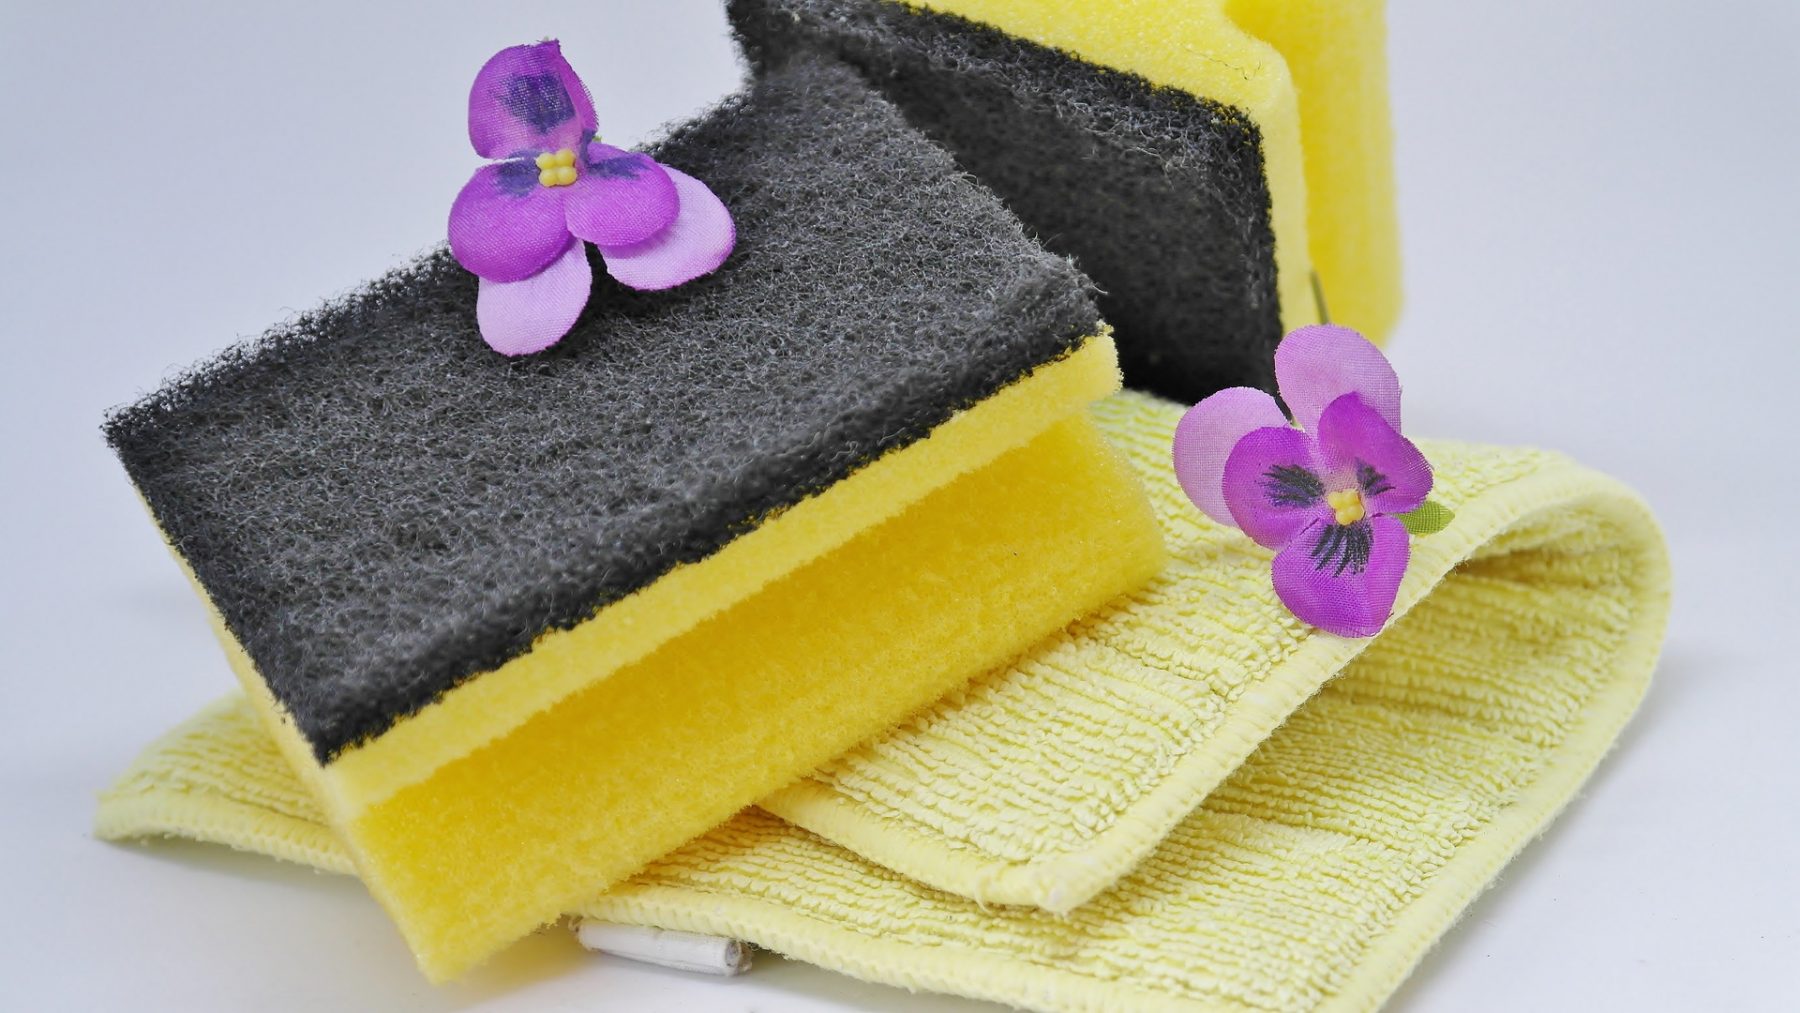 sponge memory foam products